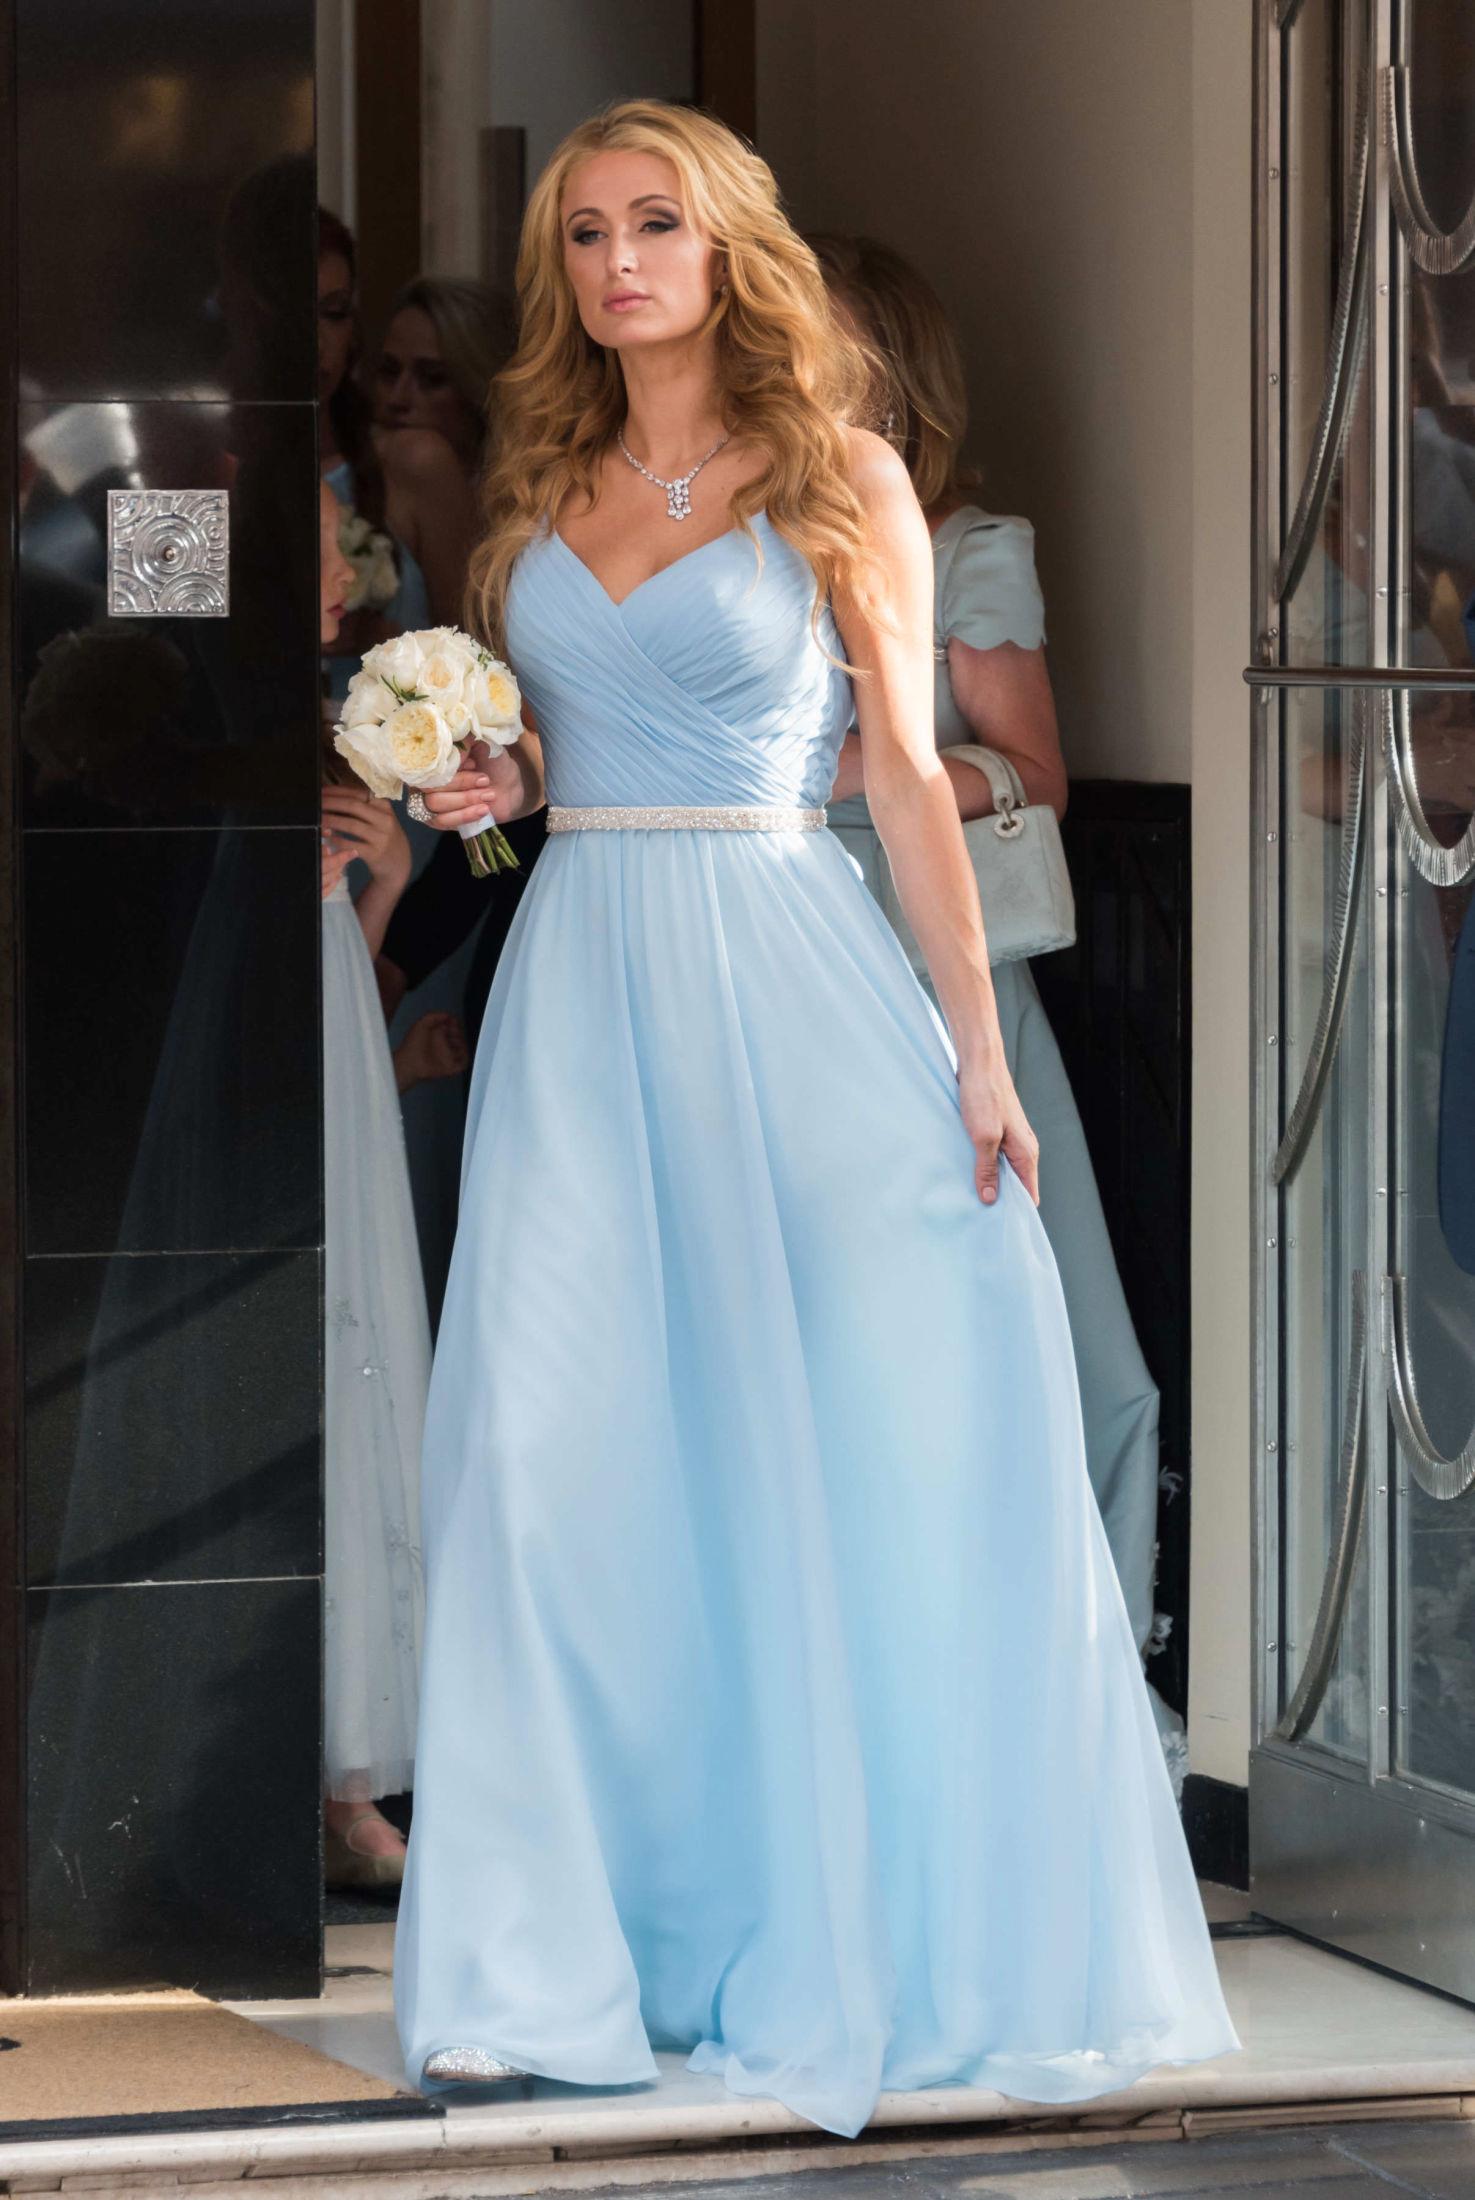 IKKE I SKYGGEN: Storesøster Paris Hilton markerte seg i Nicky Hiltons bryllup i London i 2015. Foto: NTB scanpix